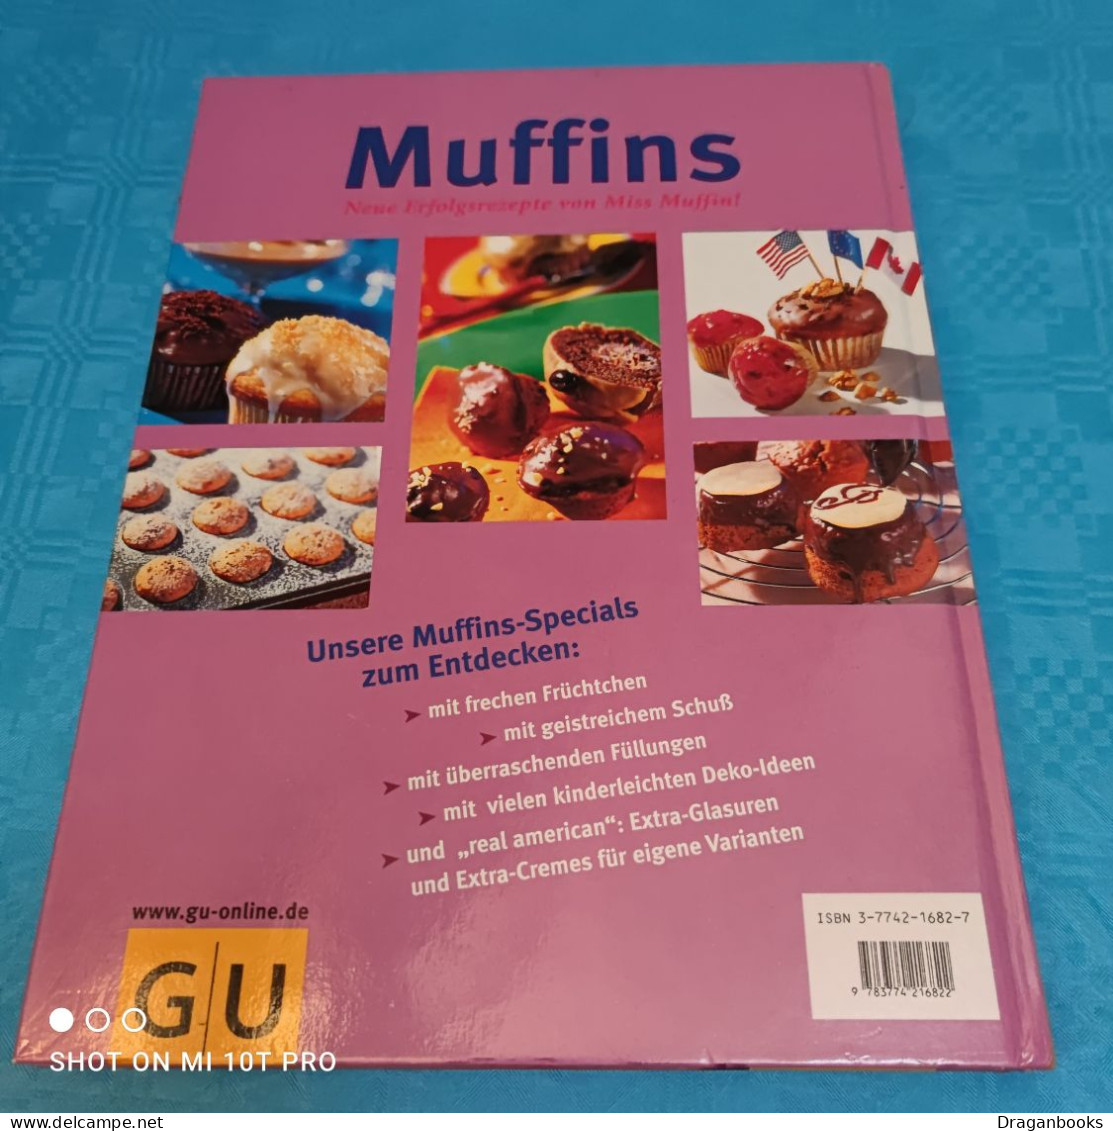 Jutta Renz - Muffins - Food & Drinks